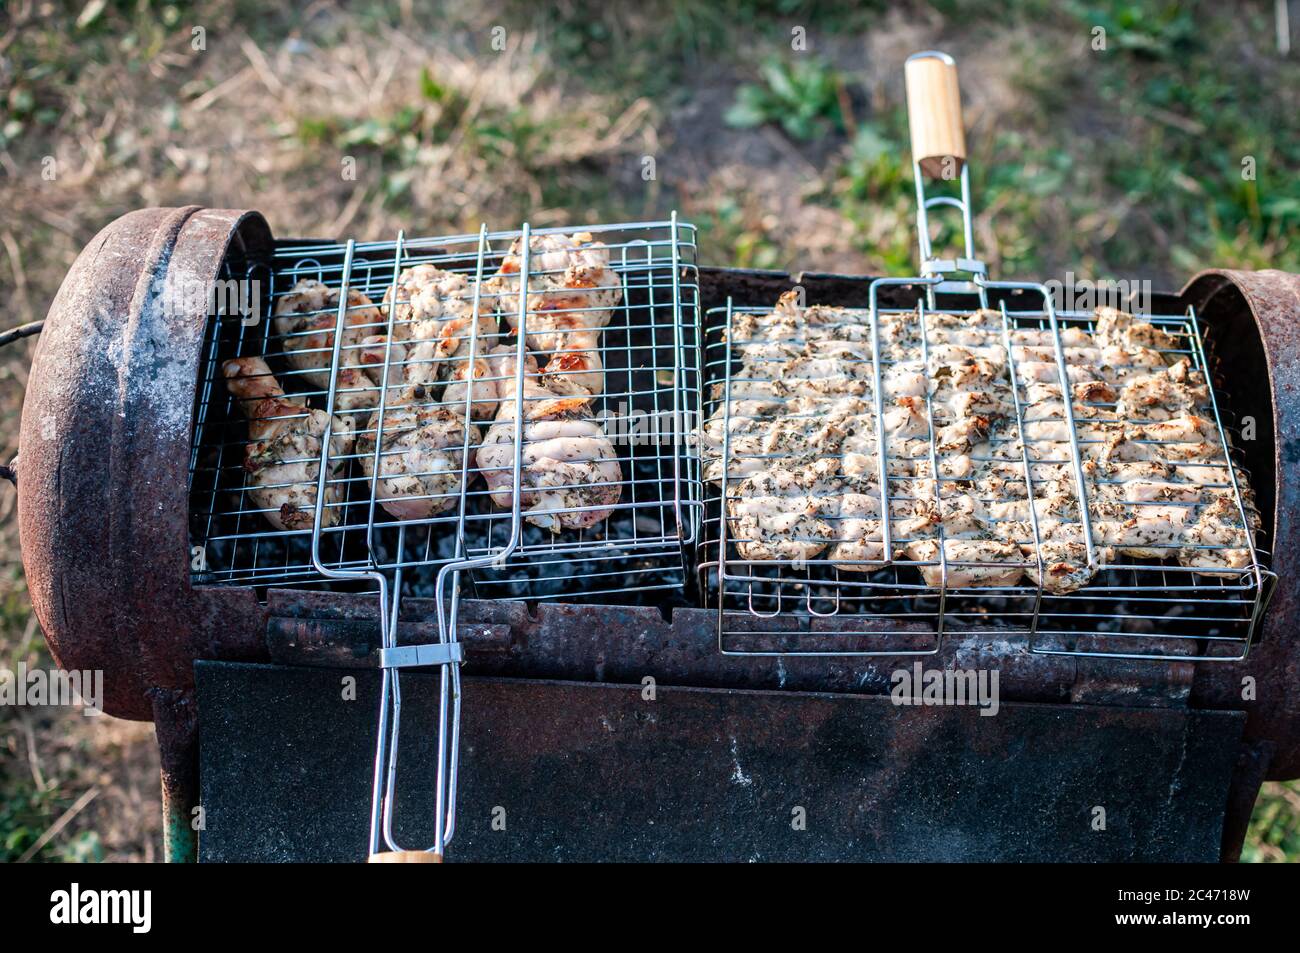 cuisson de la viande crue dans une grille sur le barbecue Banque D'Images